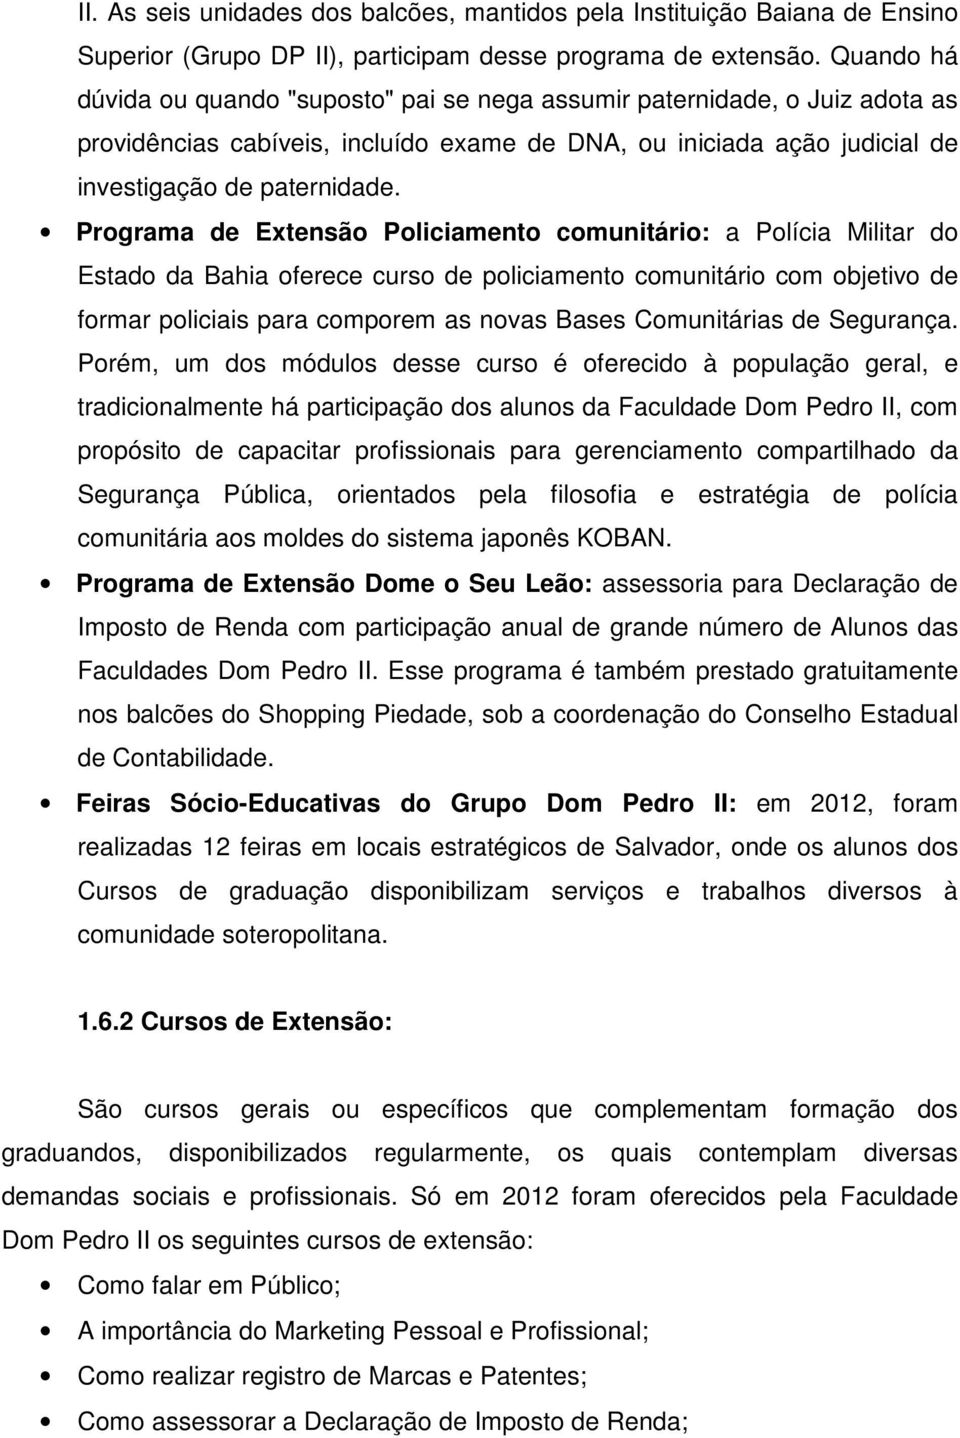 Programa de Extensão Policiamento comunitário: a Polícia Militar do Estado da Bahia oferece curso de policiamento comunitário com objetivo de formar policiais para comporem as novas Bases